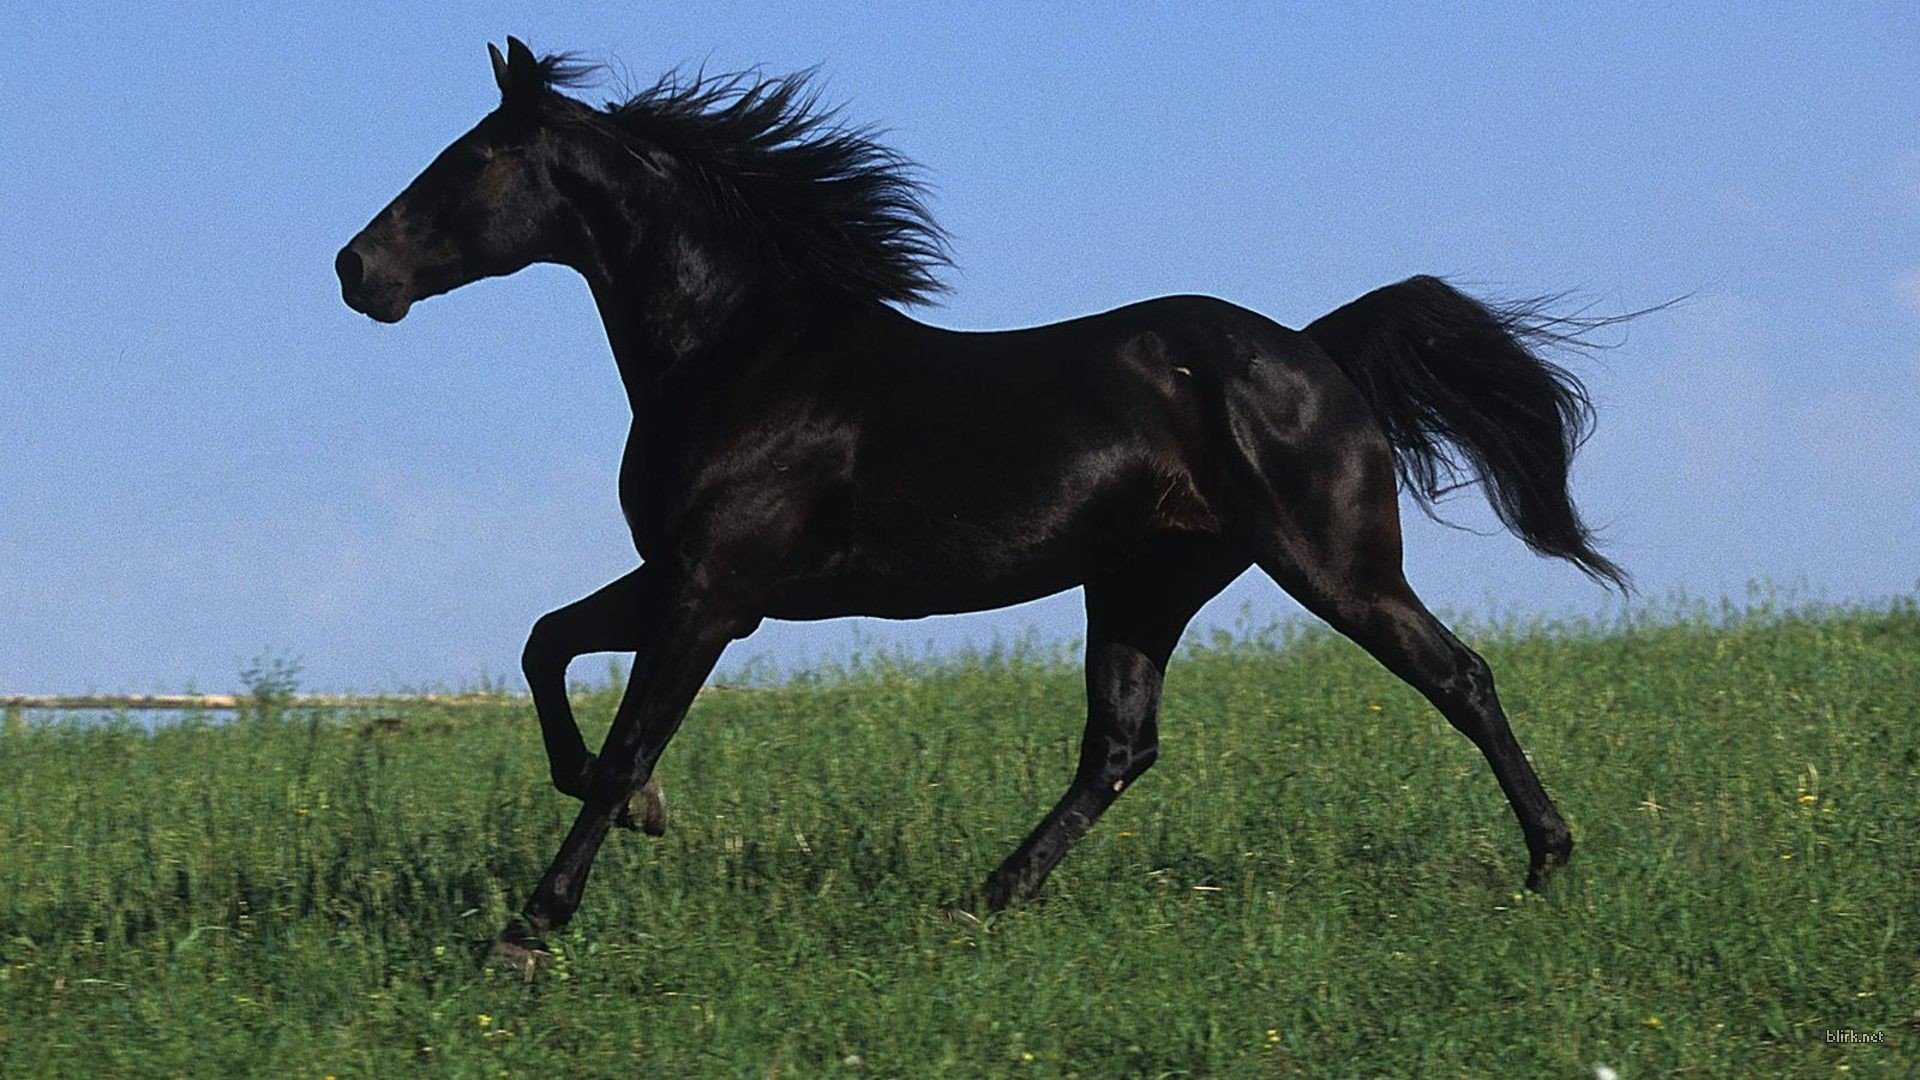 Black Horse Galloping In A Field Of Green Grass Desktop Wallpaper